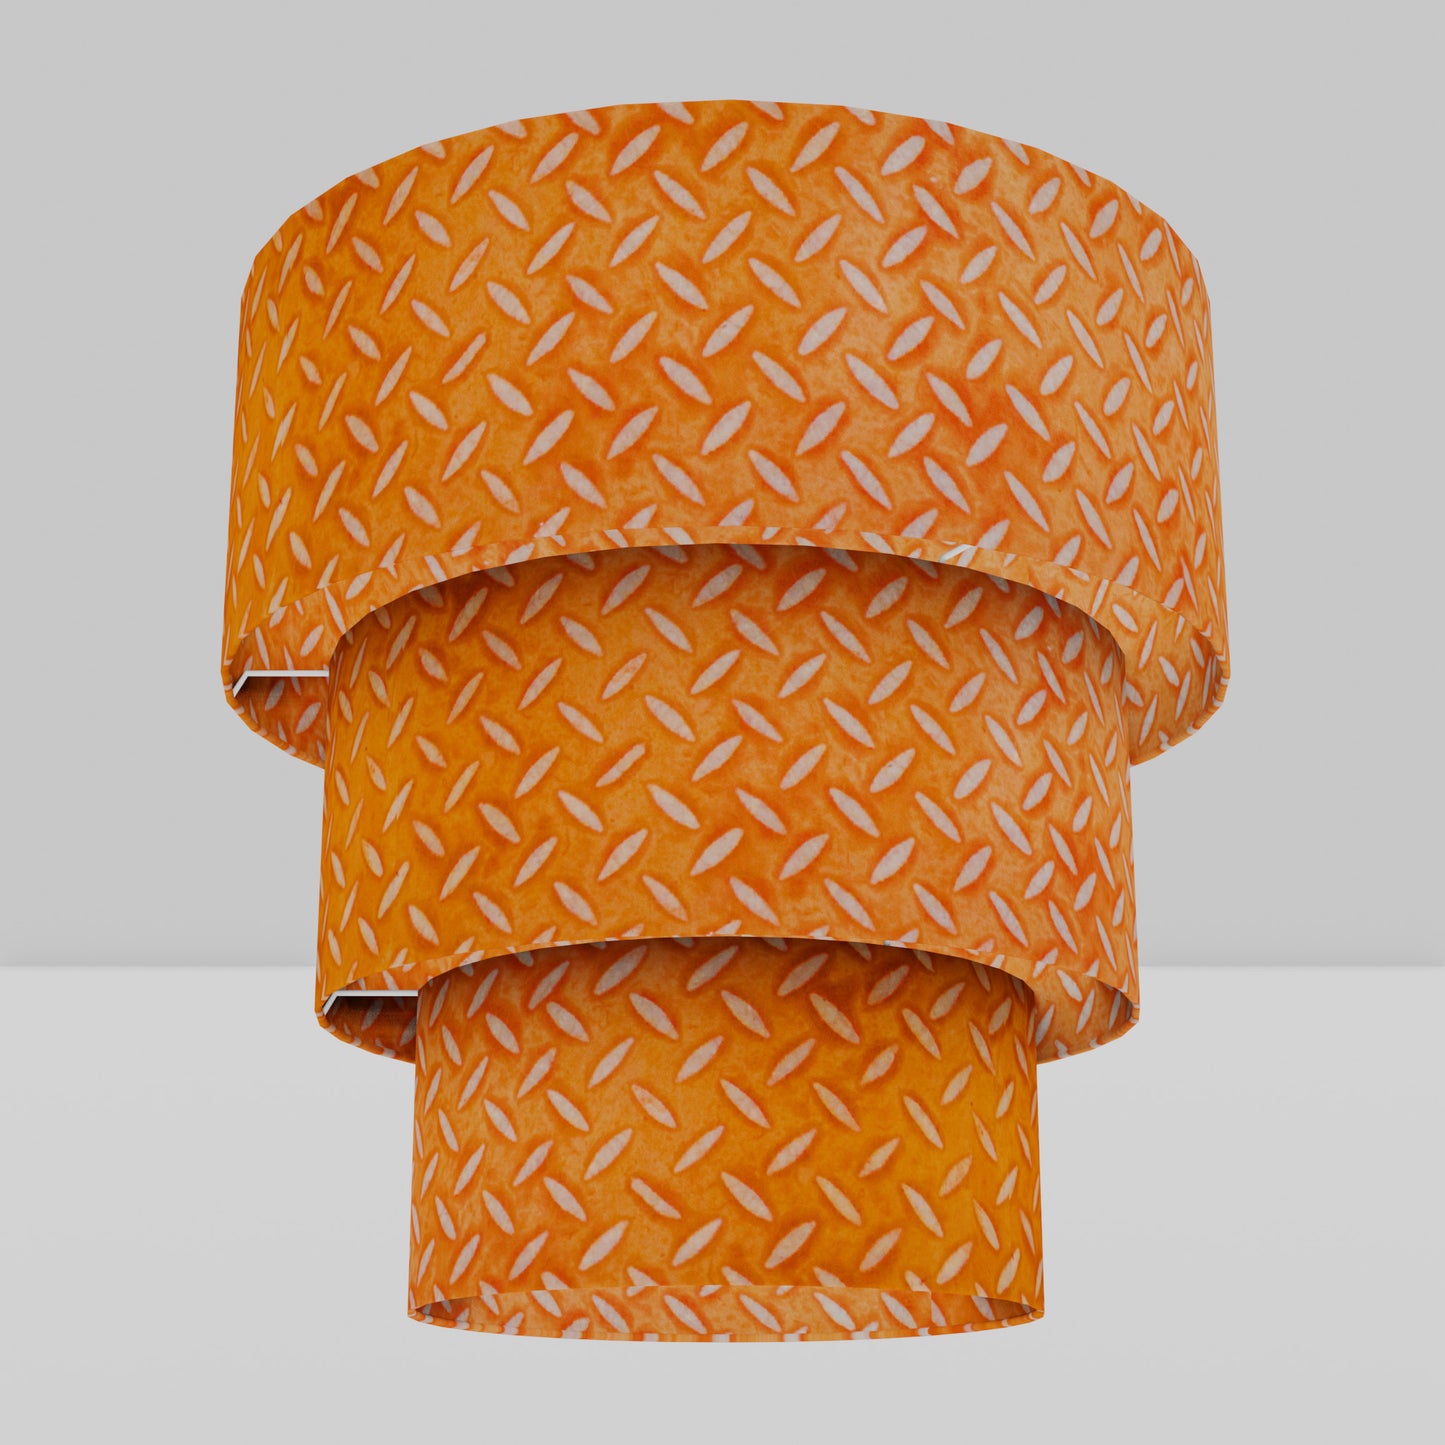 3 Tier Lamp Shade - P91 - Batik Tread Plate Orange, 50cm x 20cm, 40cm x 17.5cm & 30cm x 15cm